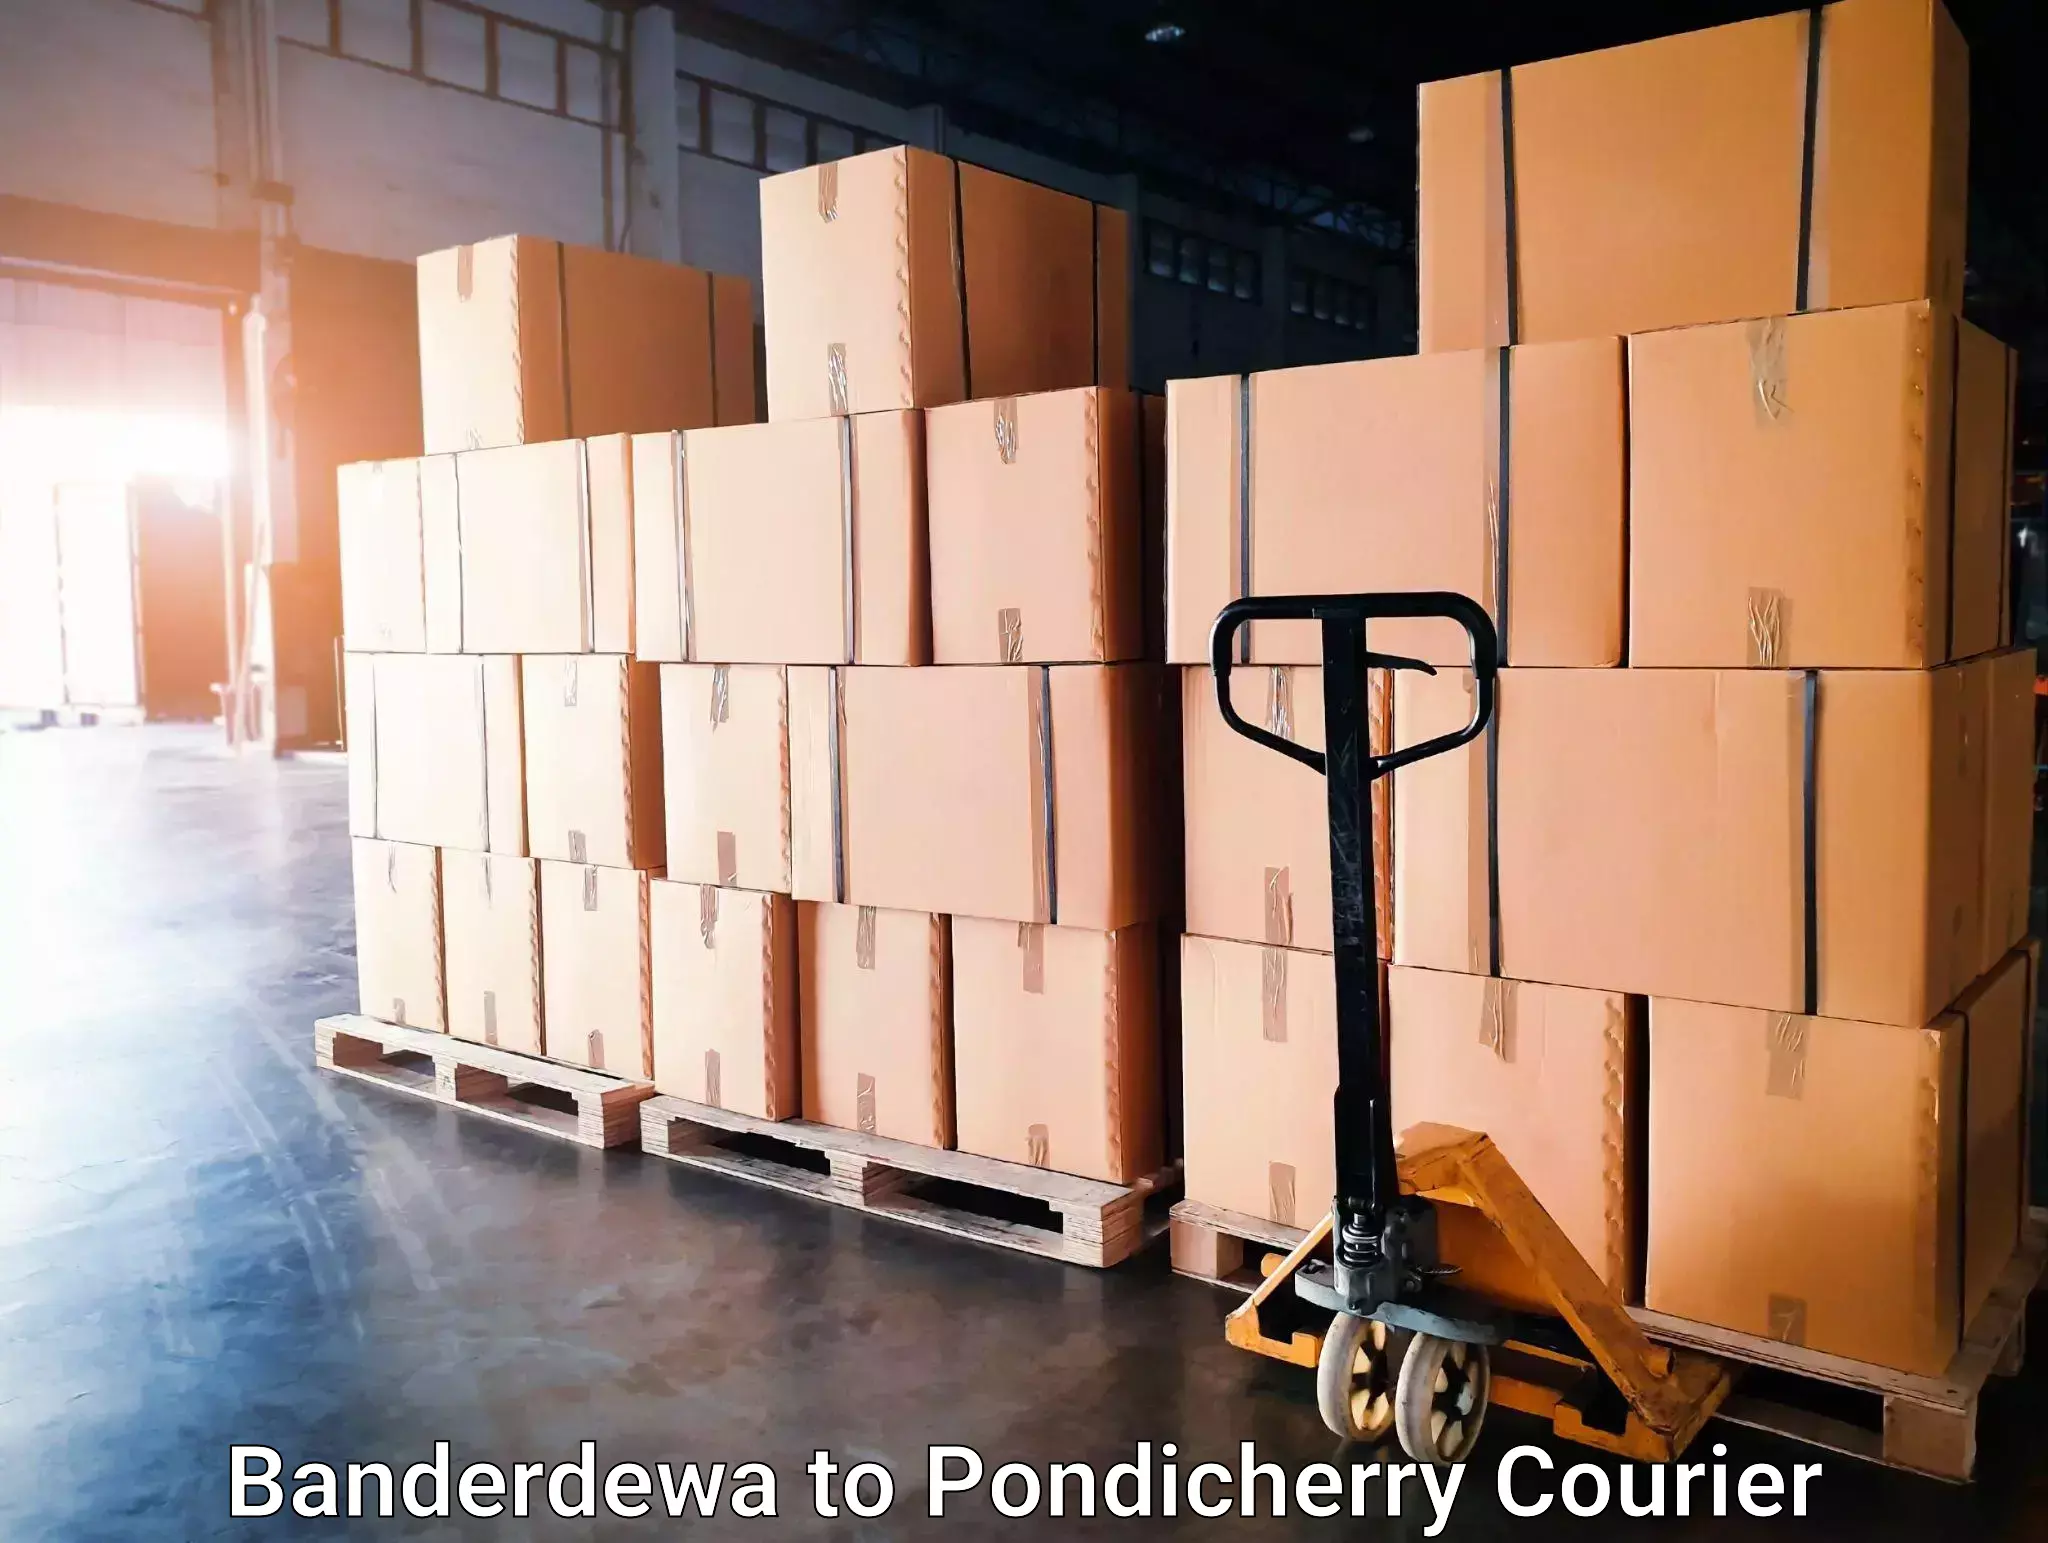 International courier networks Banderdewa to Pondicherry